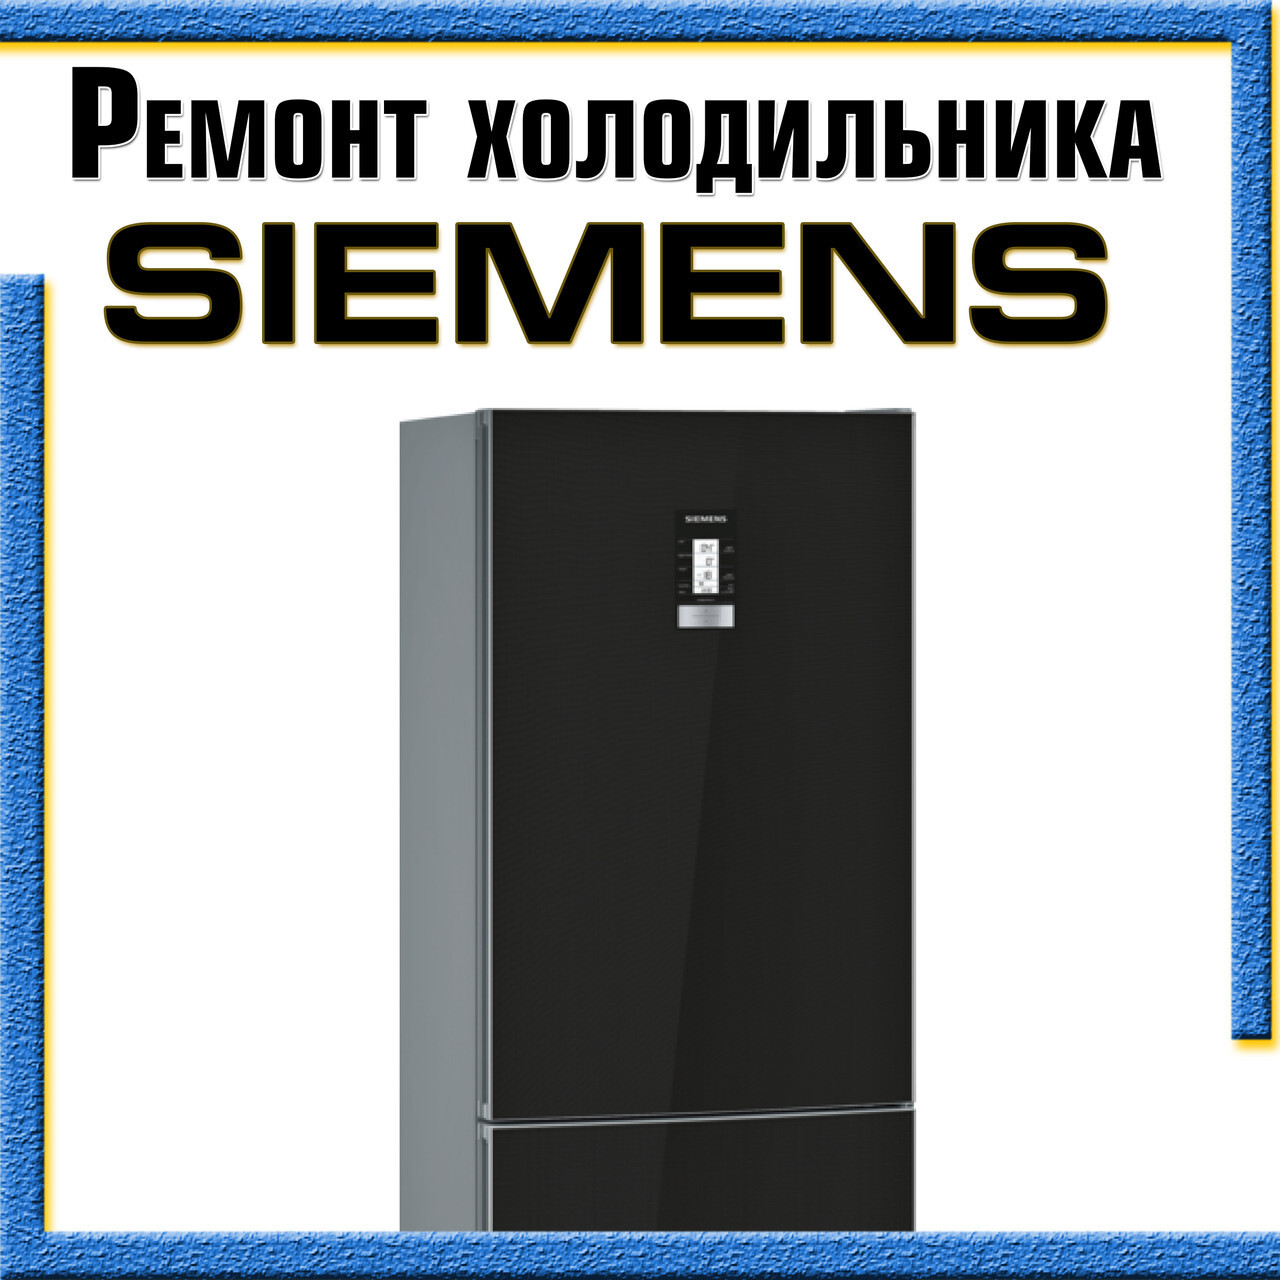 Ремонт модулей управления холодильников в Одессе